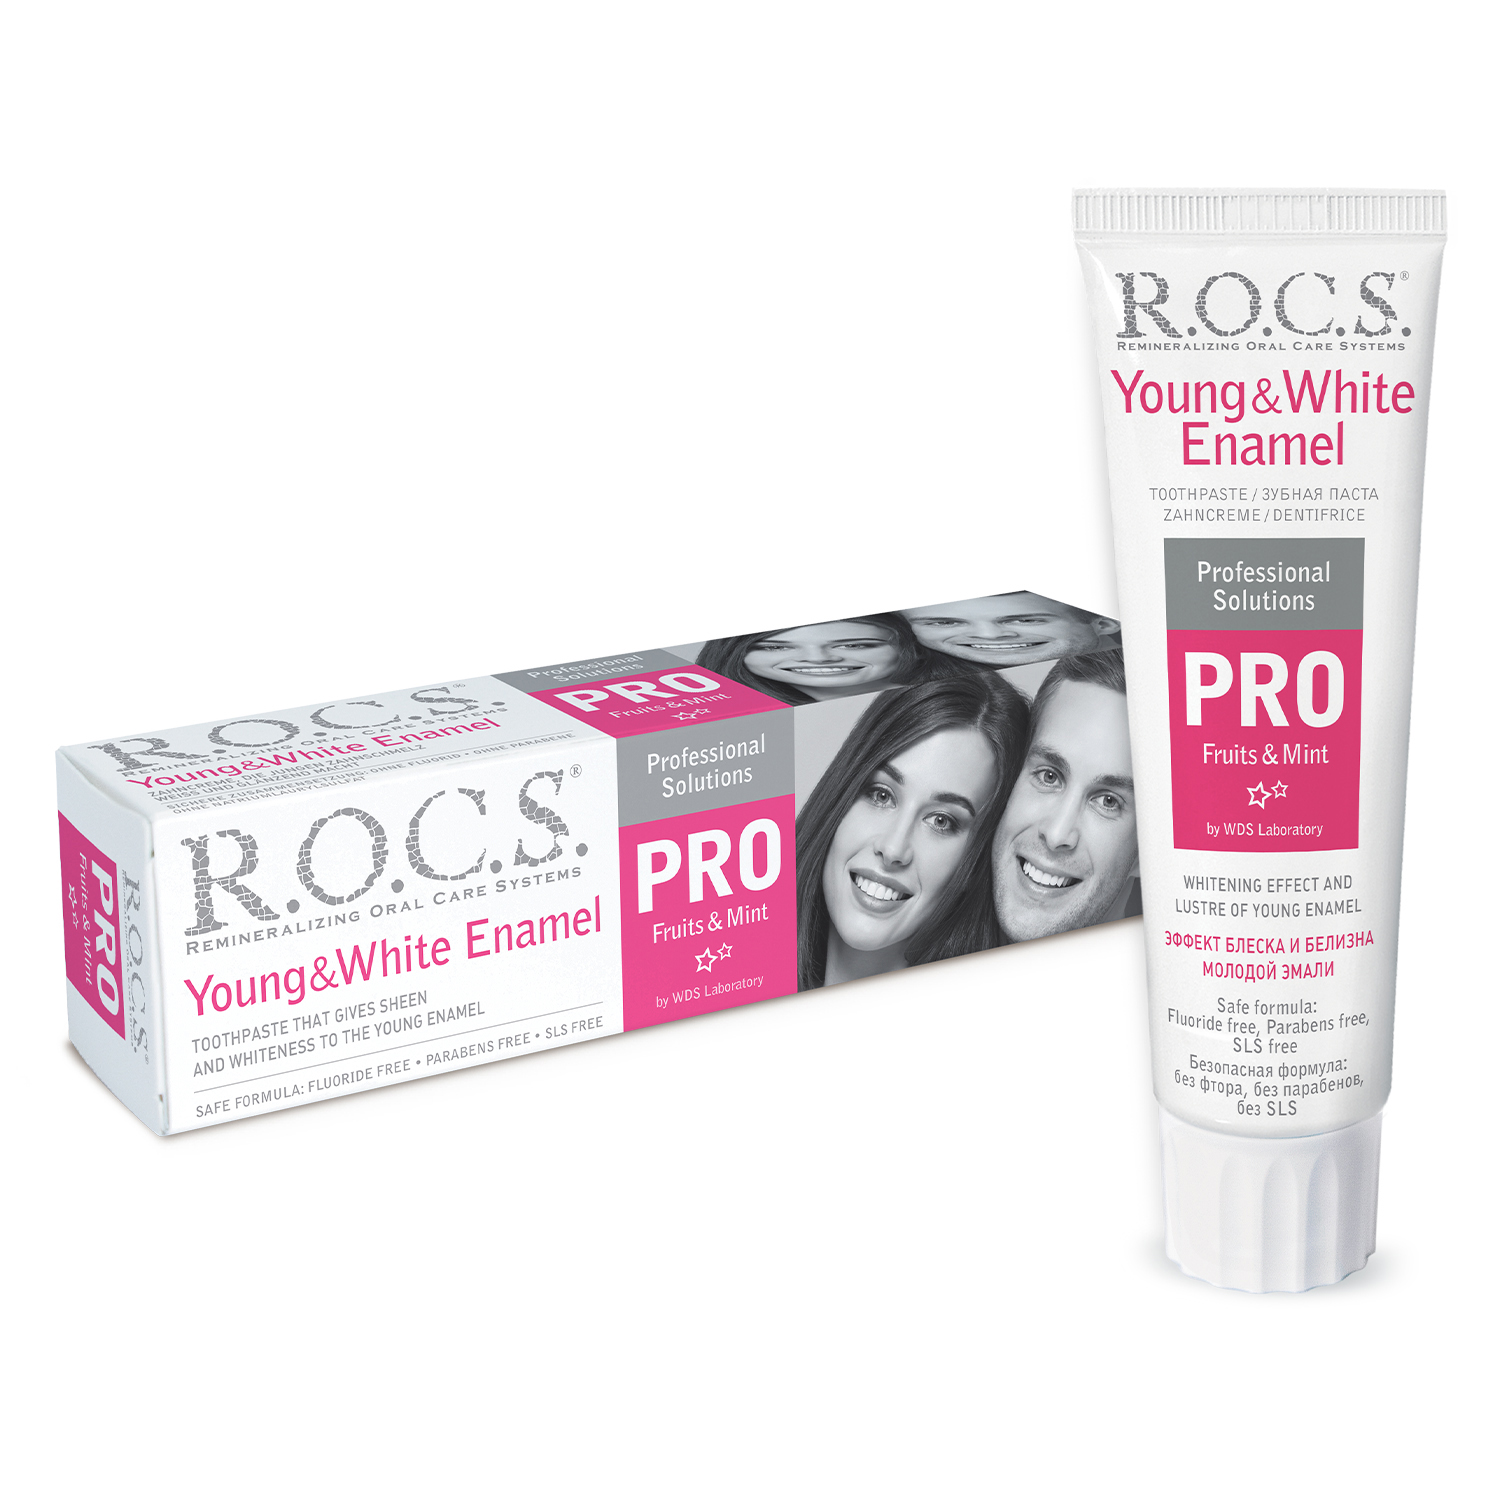 R.O.C.S. Pro Young & White Enamel Toothpaste